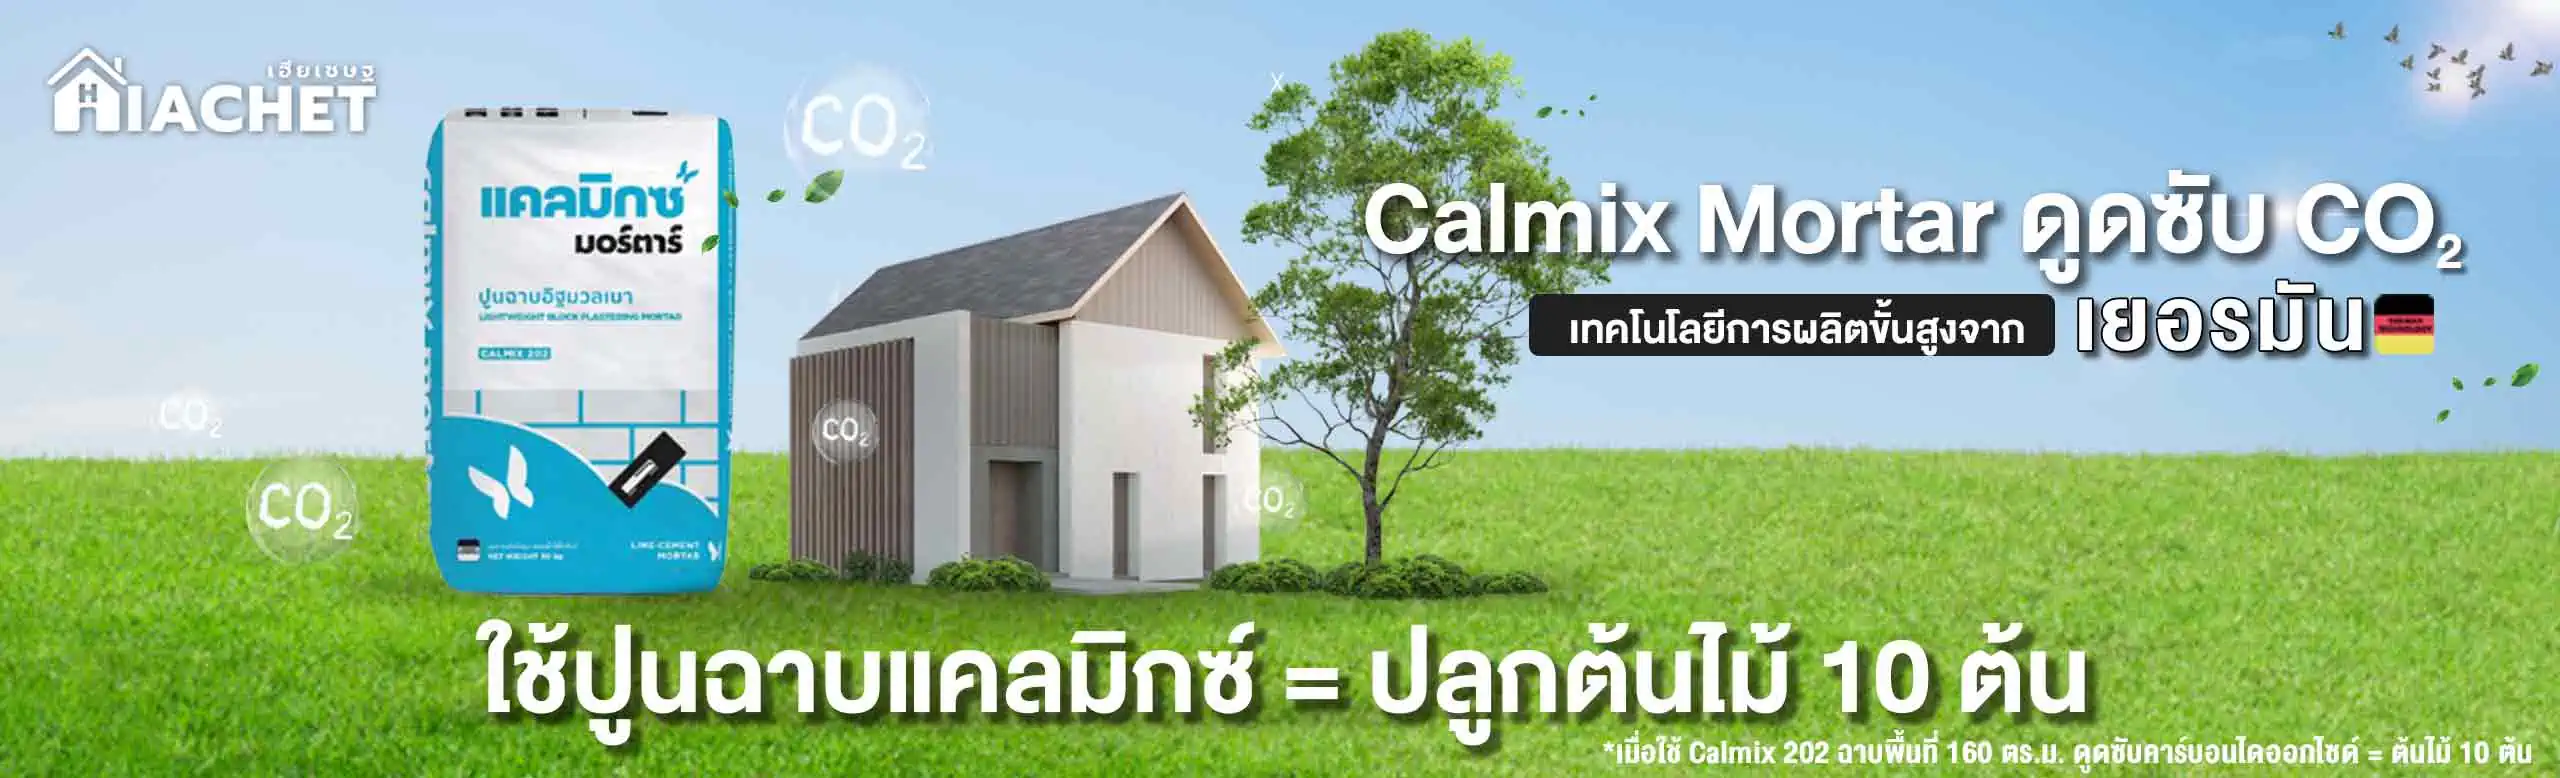 Banner-Calmix-2560x778